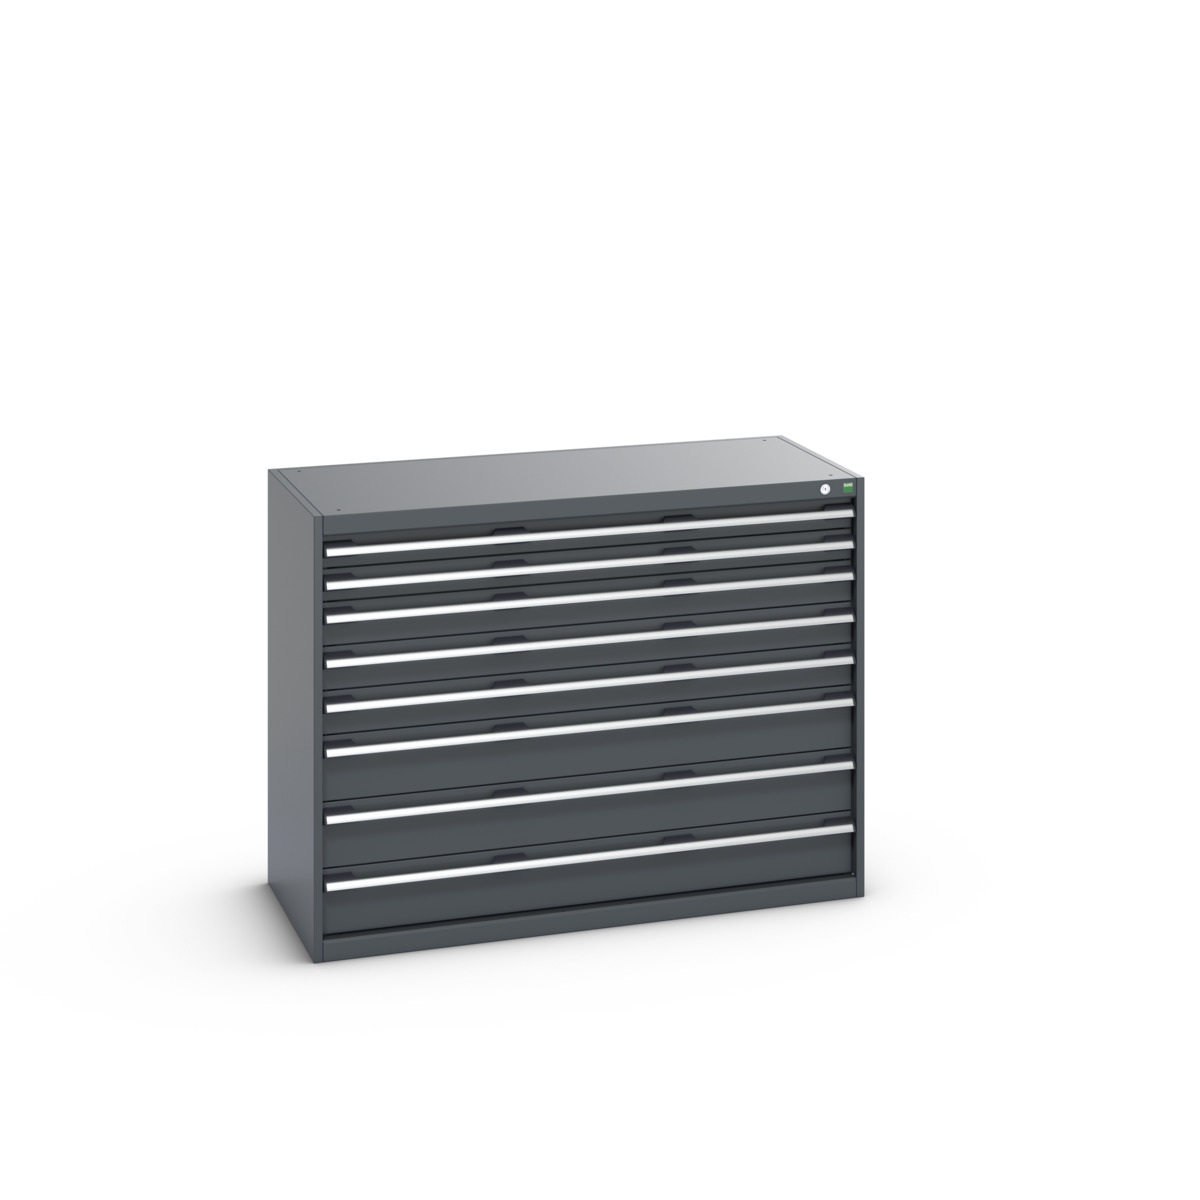 40022153.77V - cubio drawer cabinet